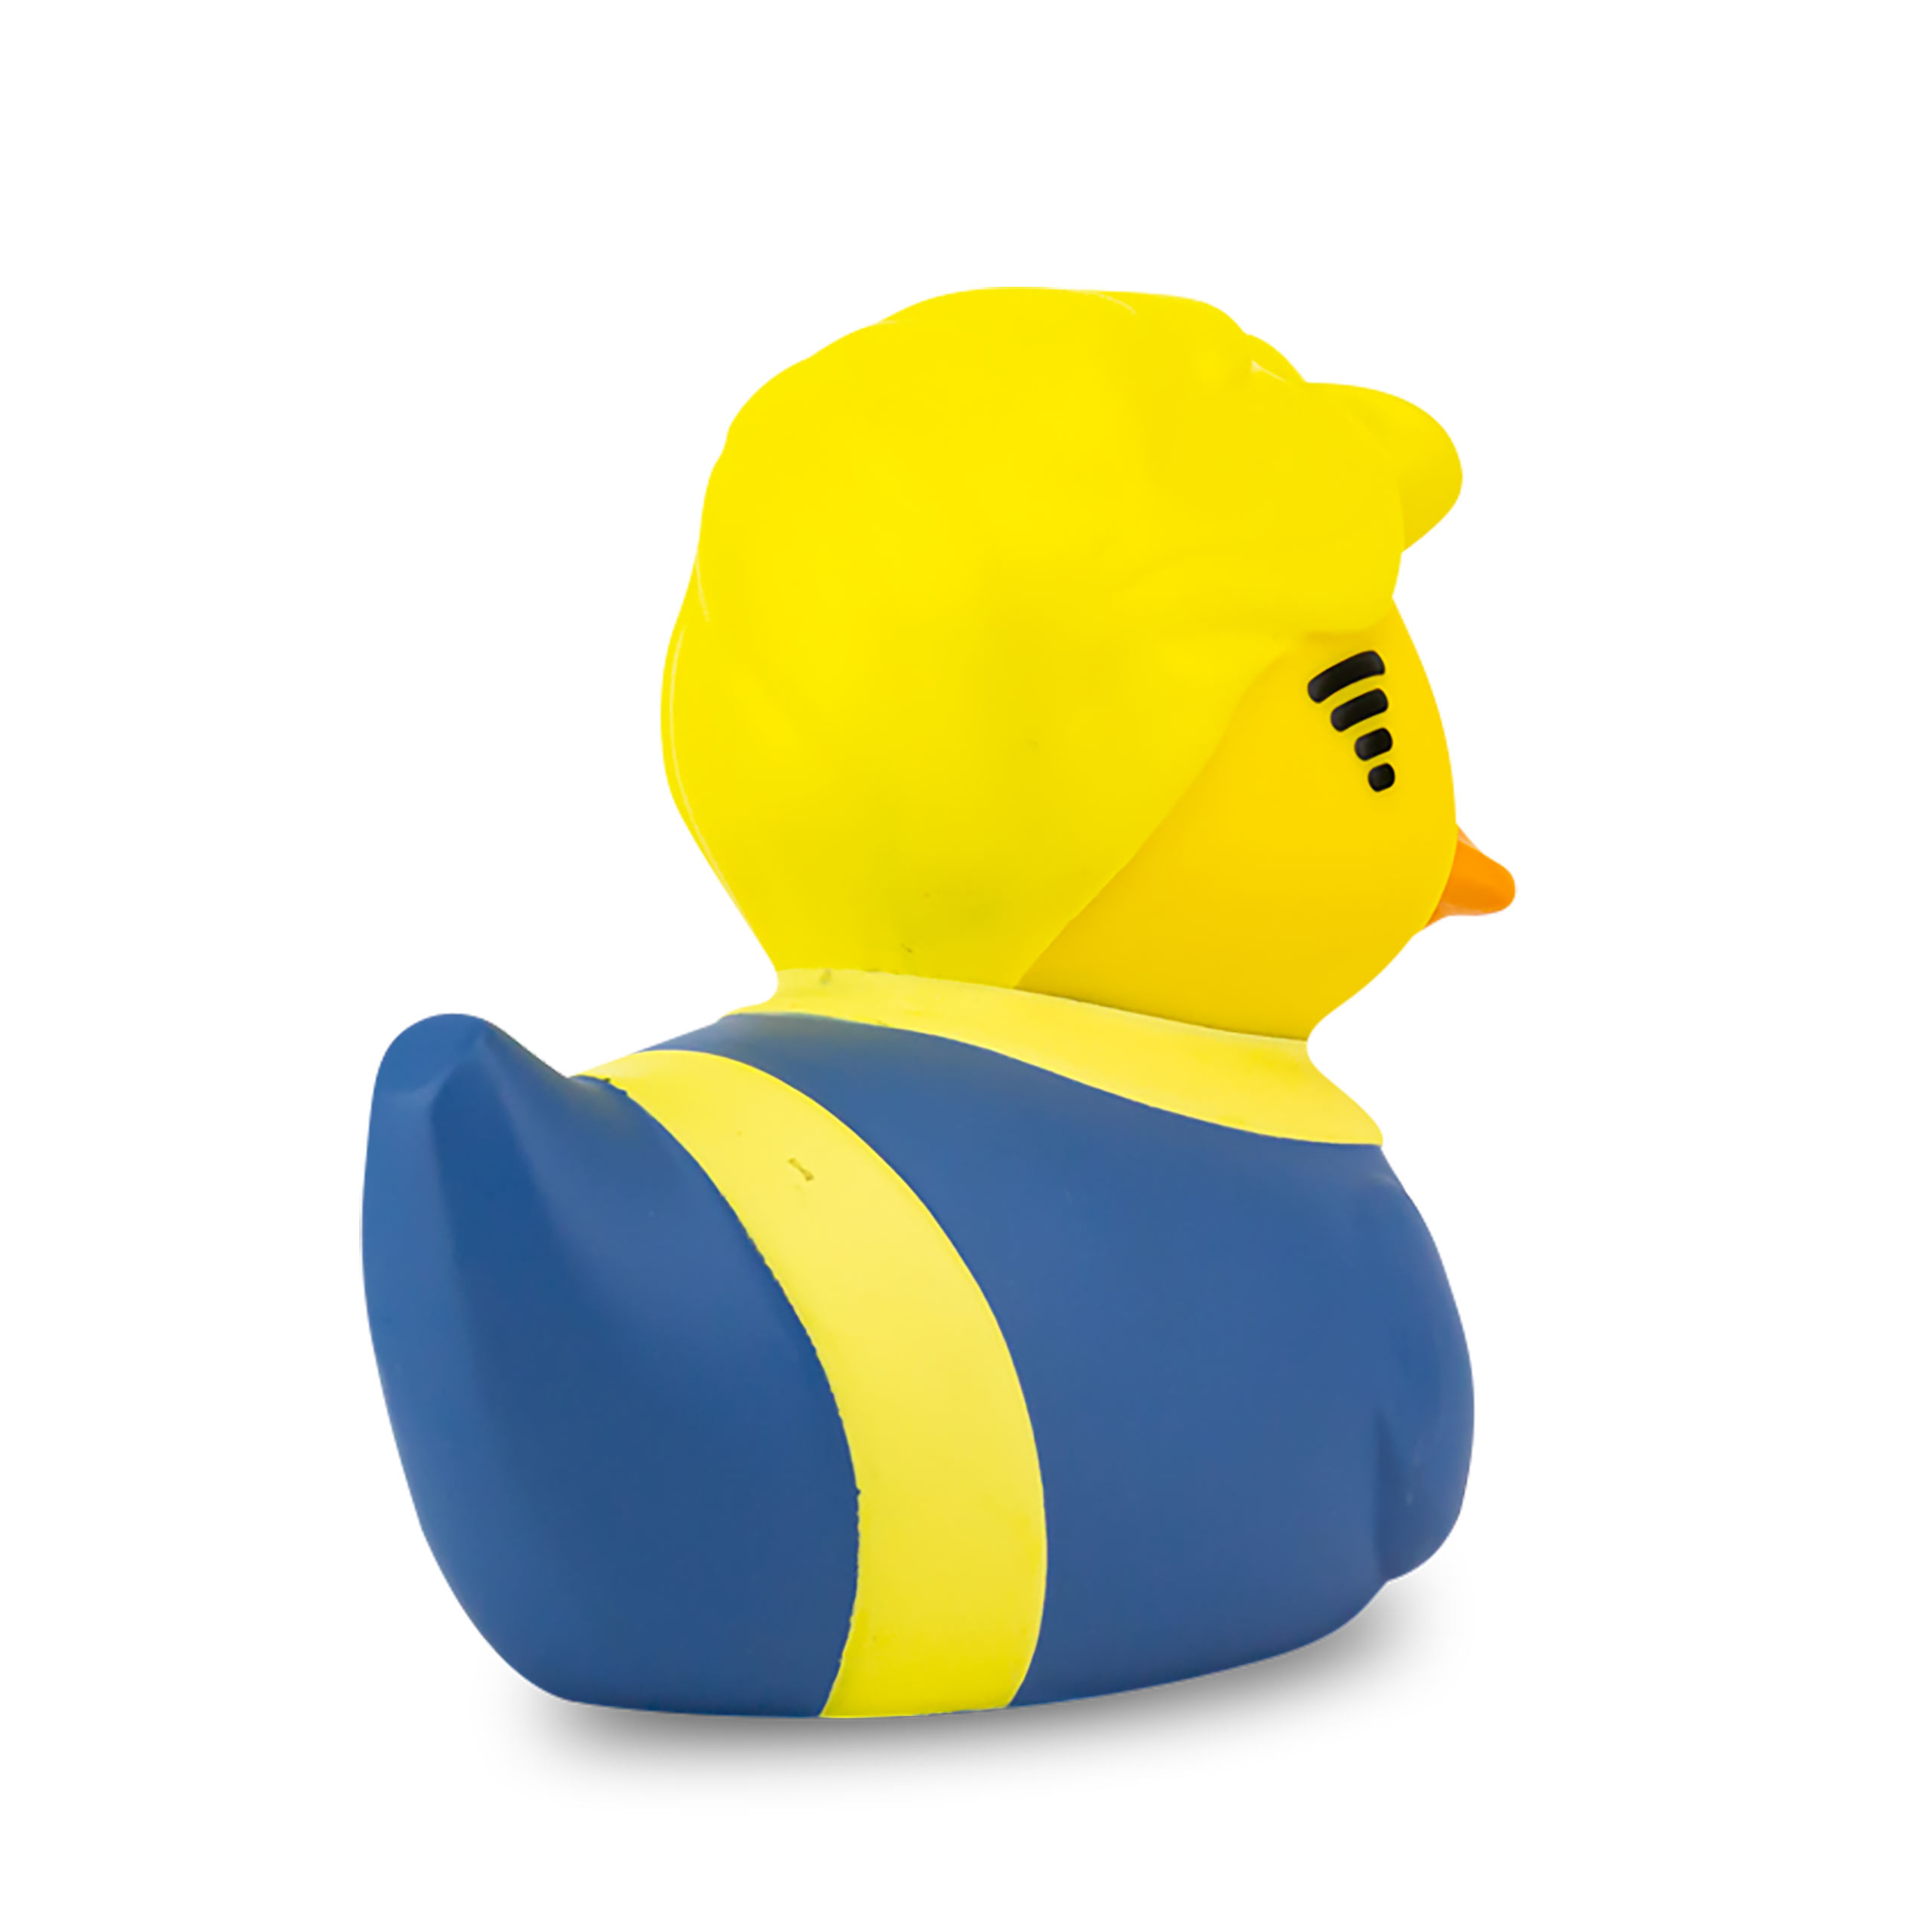 Fallout - Vault Boy TUBBZ Decorative Duck